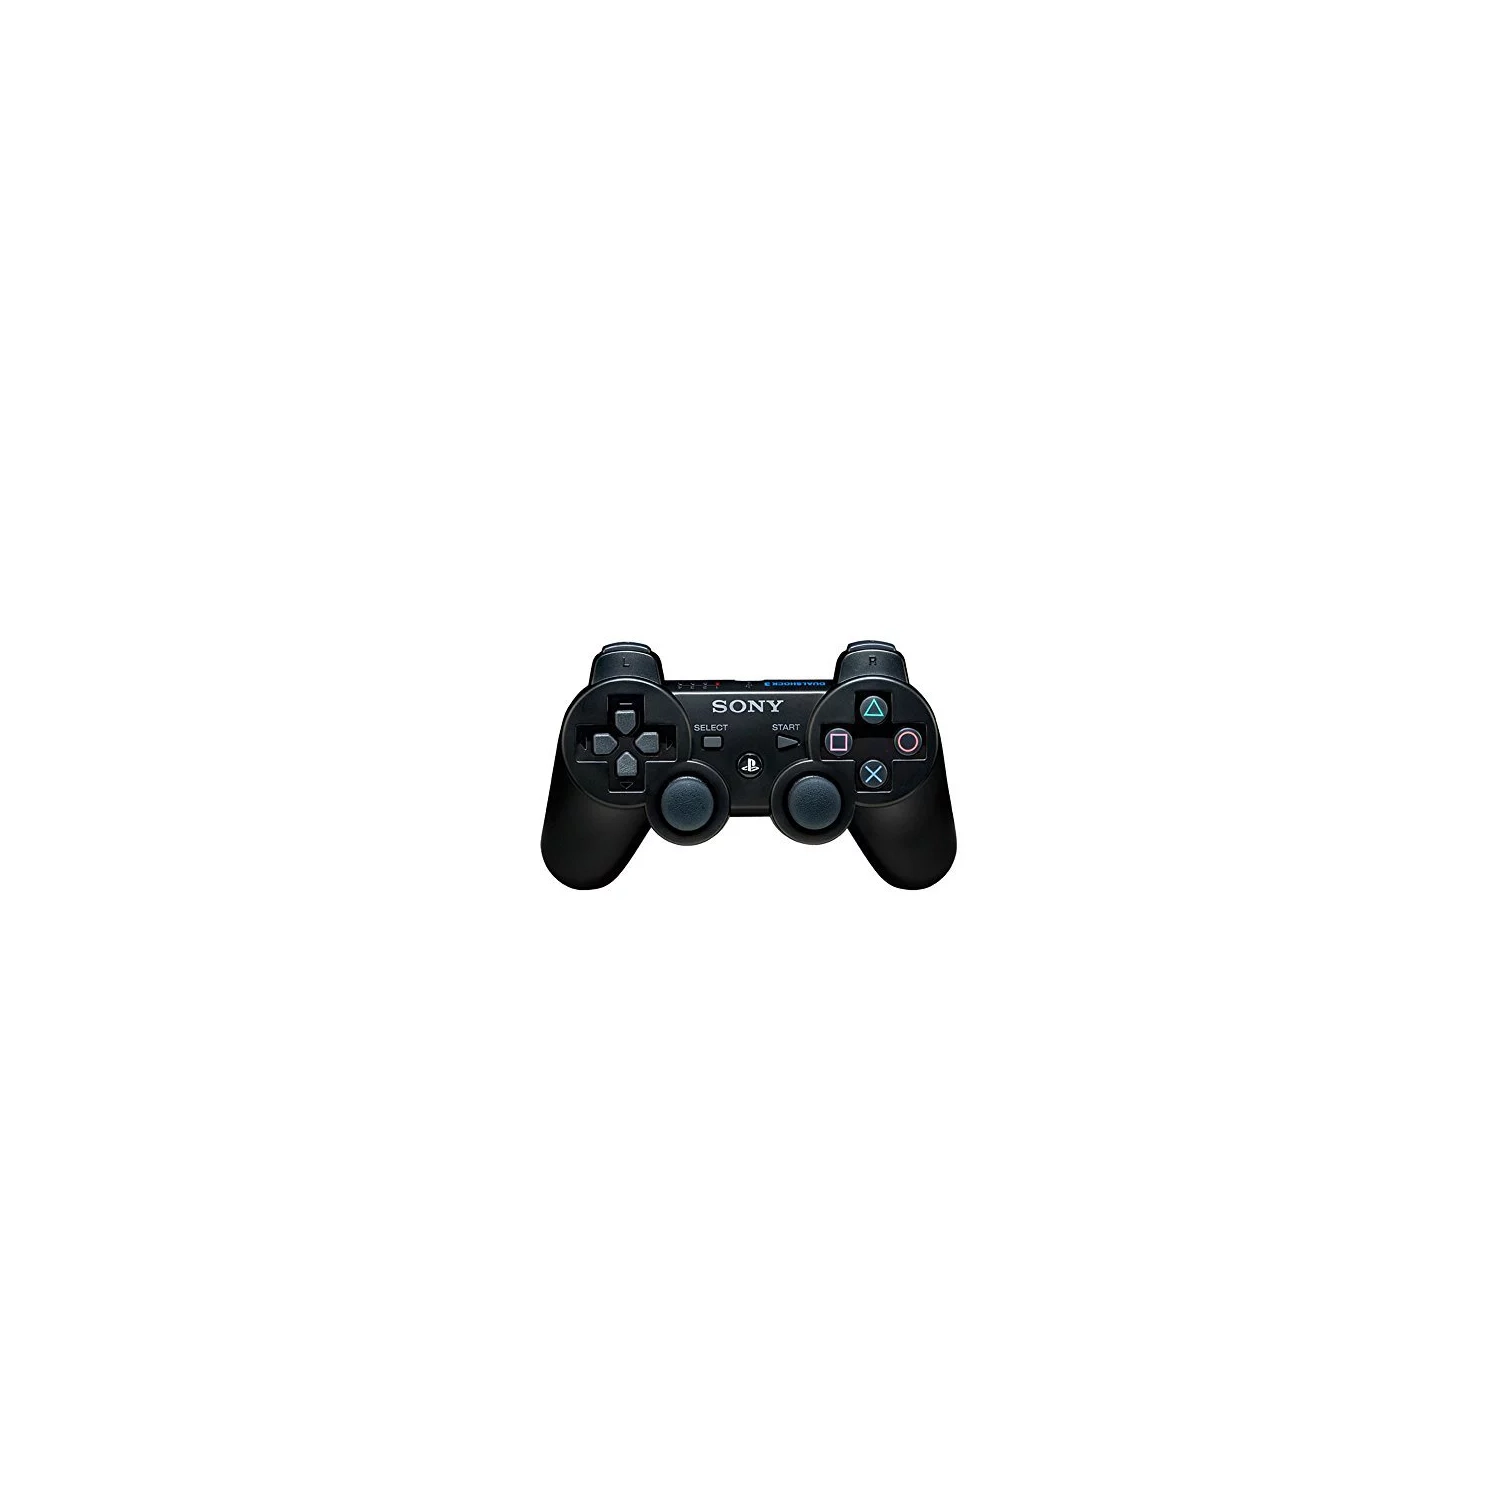 PlayStation 3 PS3 Dualshock 3 Black Controller (Refurbished)